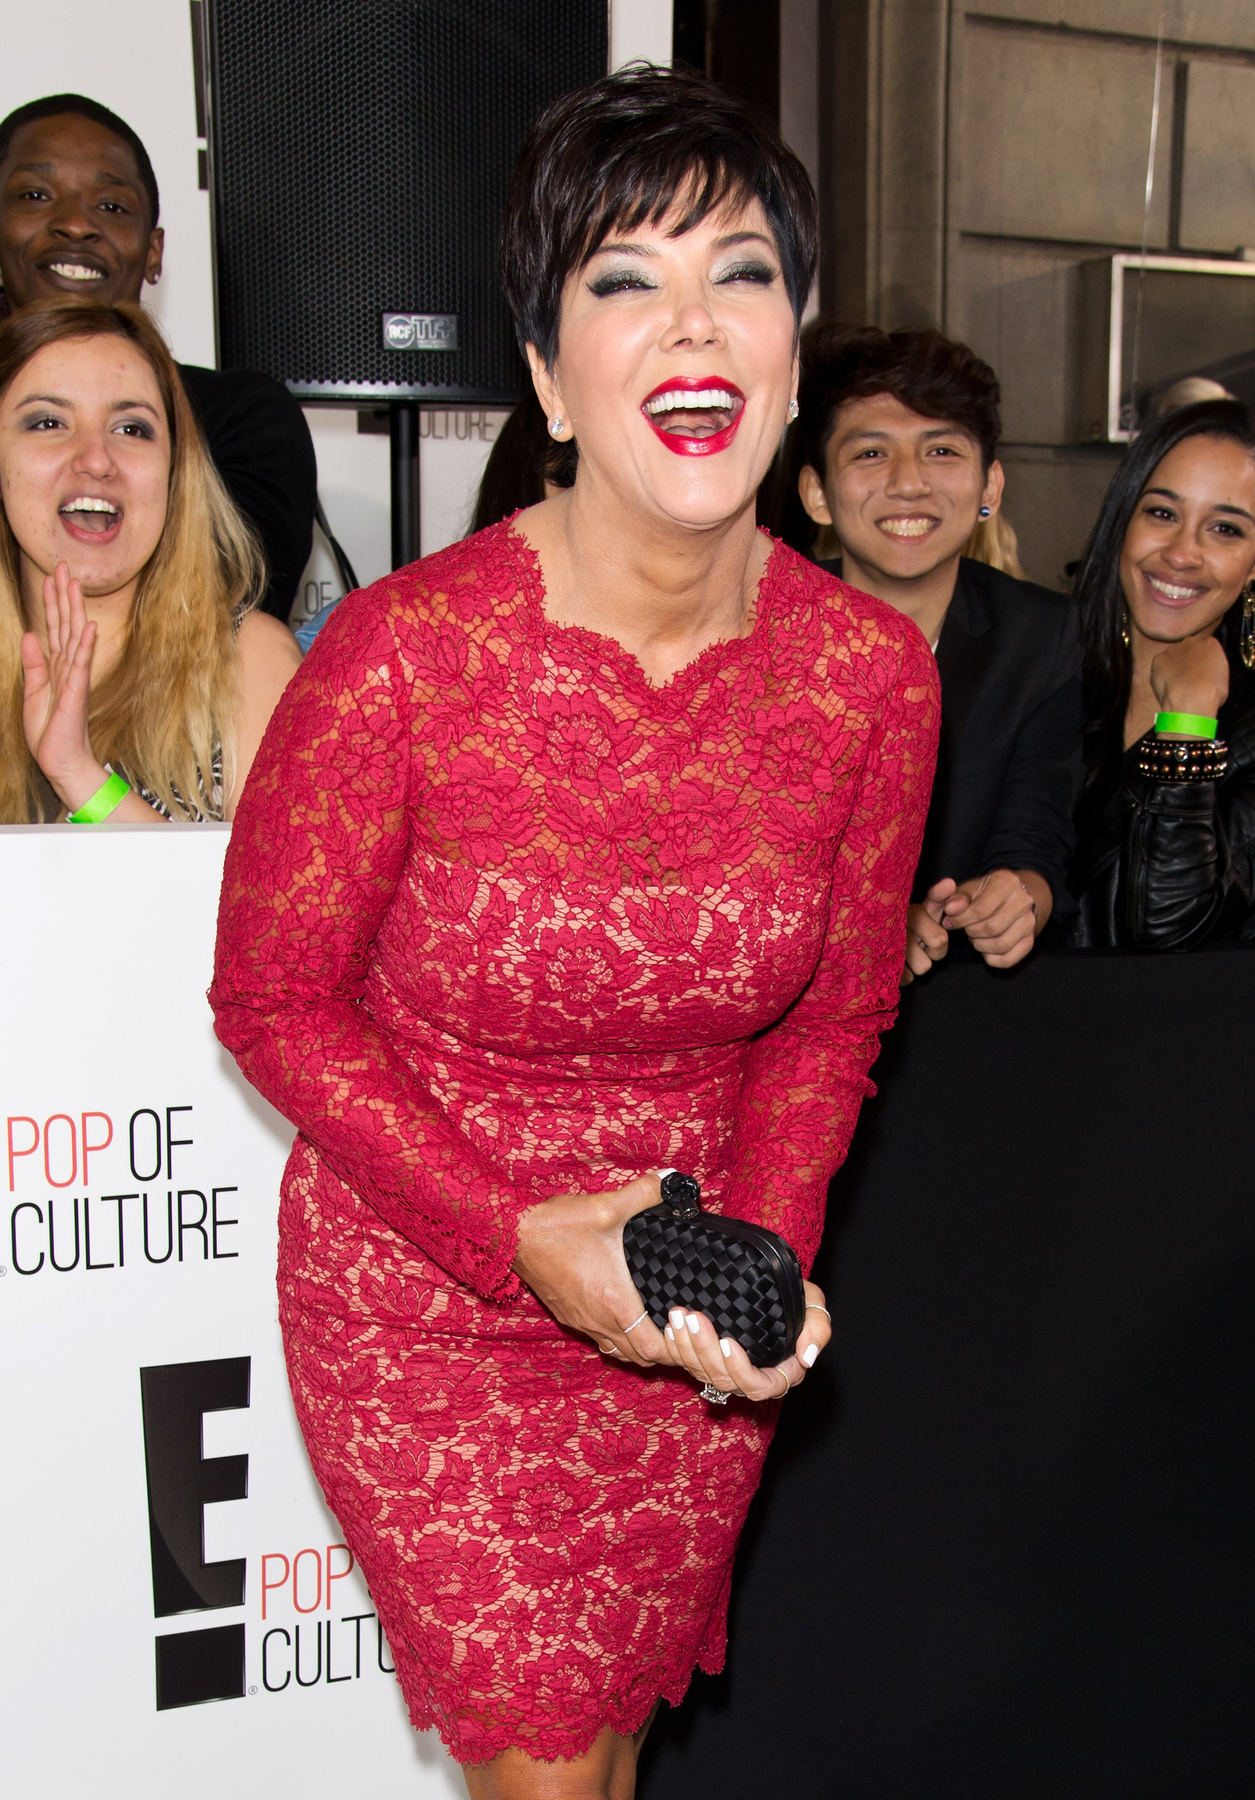 Kirittyentette magát a 2015-ös National Television Awards vörös szőnyegére is Londonban.